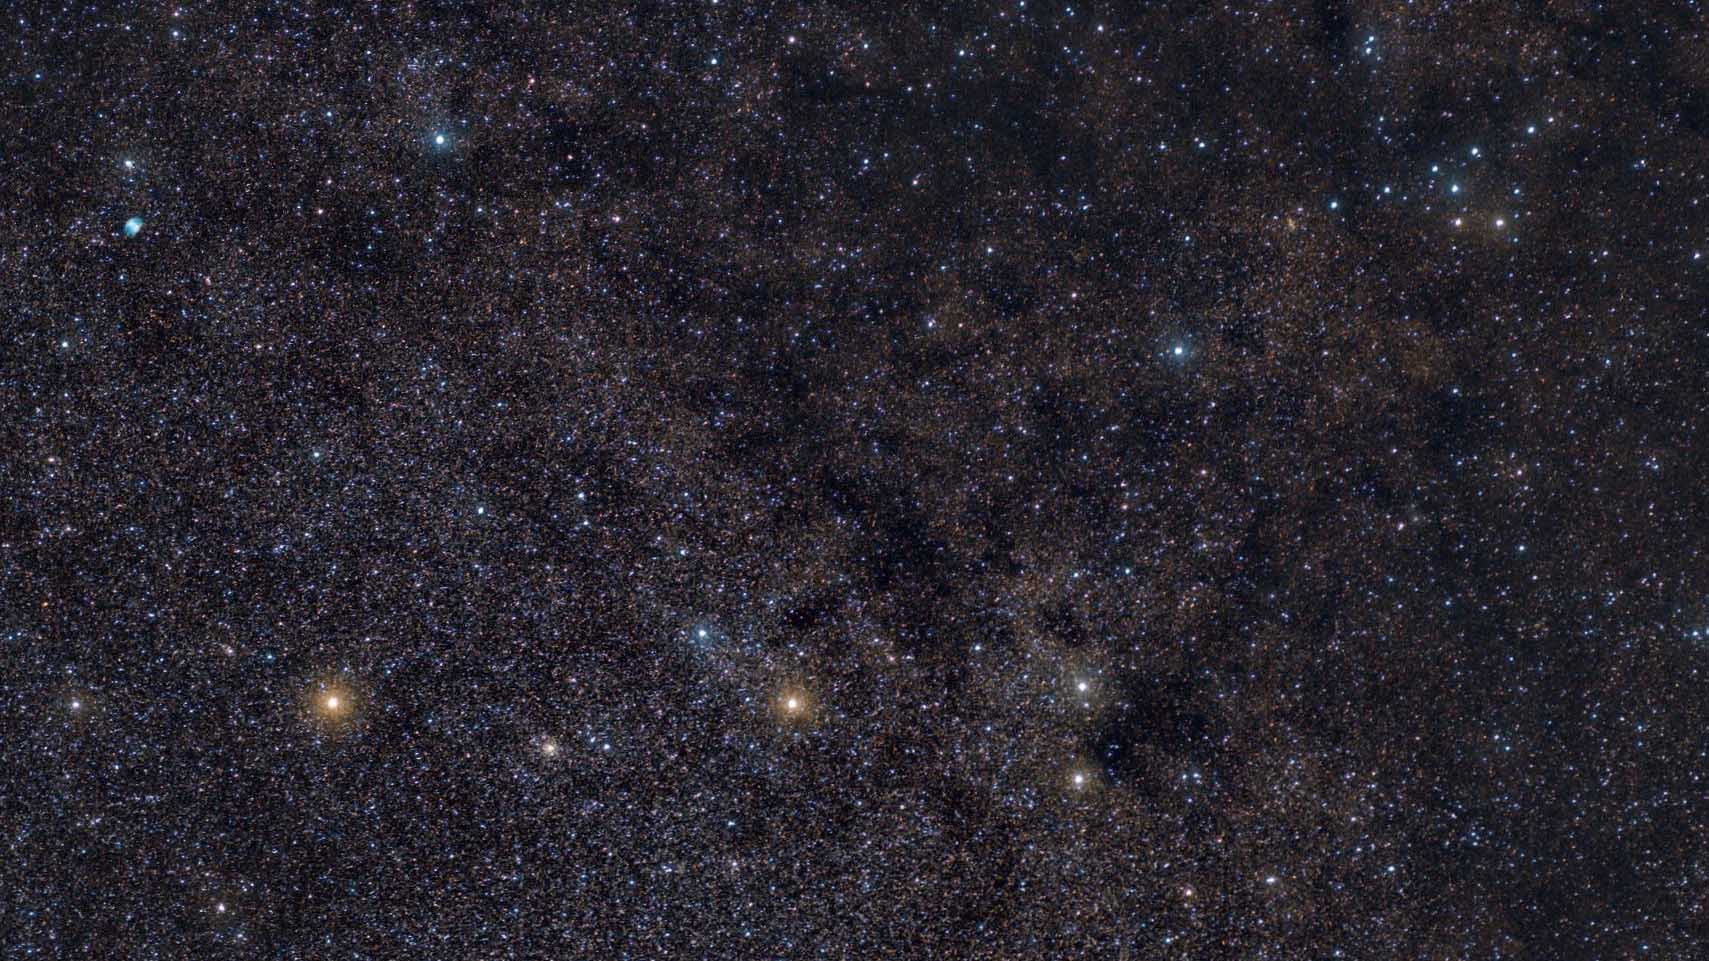 I mitten av bilden syns Pilens huvudstjärnor, i det övre området syns M 27 till vänster, och Klädhängaren till höger. Marcus Degenkolbe